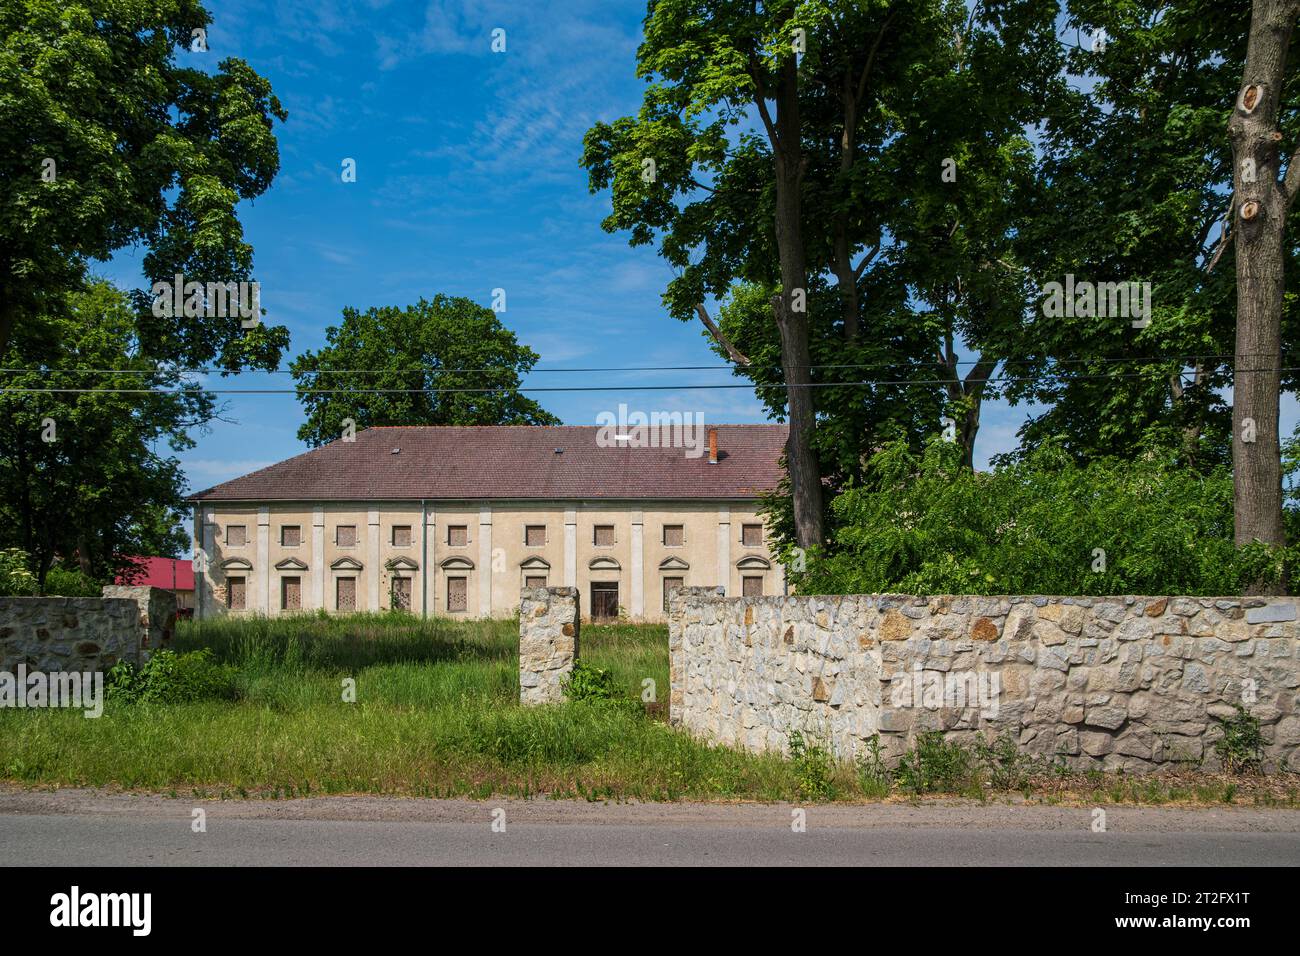 Ruine des Gutshauses Schönfeld, ein denkmalgeschütztes Herrenhaus aus dem Jahre 1783, in Krzywiczyny (Schönfeld), Bezirk Kluczbork, Woiwodschaft Oppeln, Polen. Stockfoto